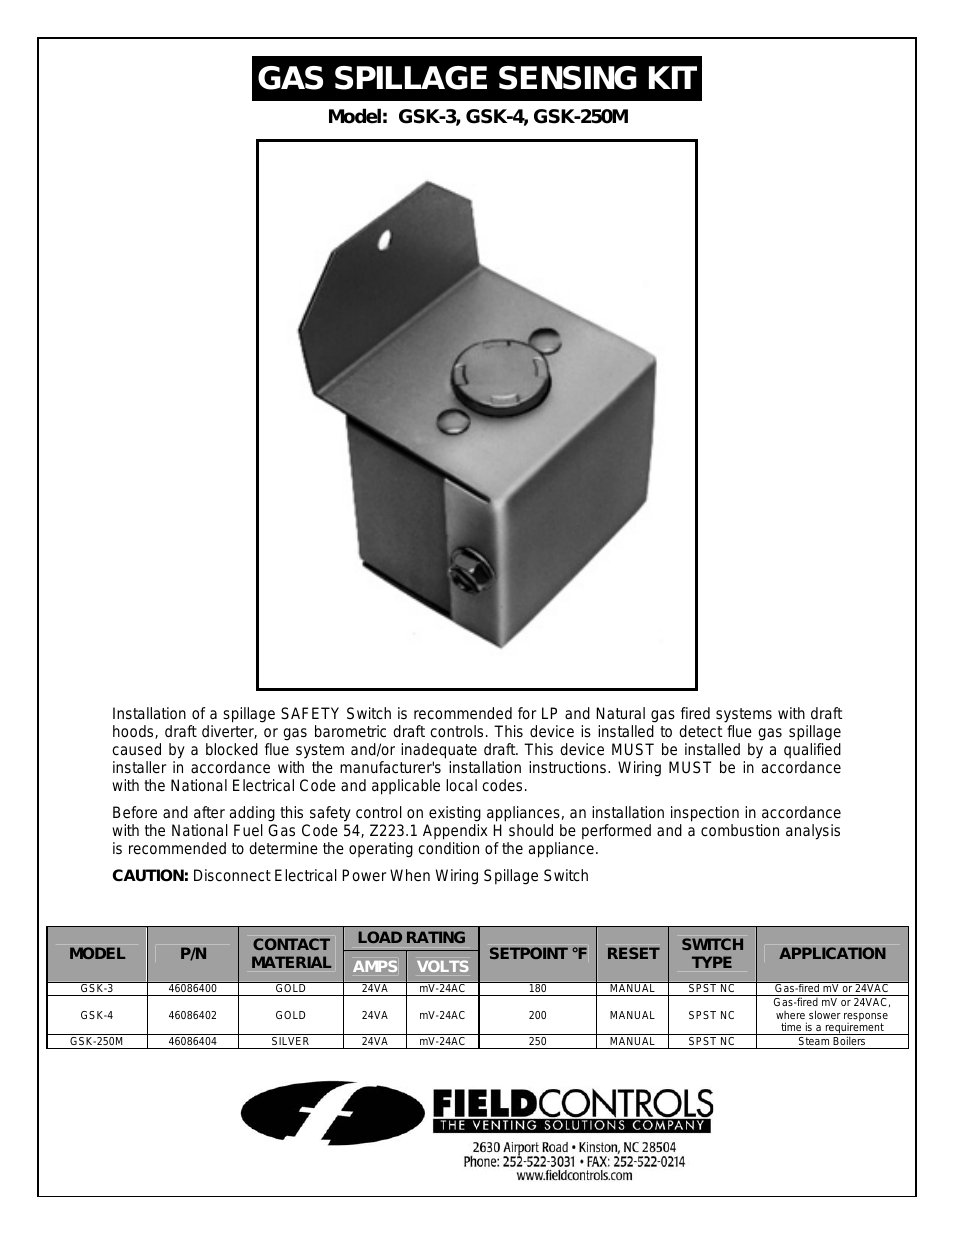 Gas Spillage Sensing Kit GSK-4